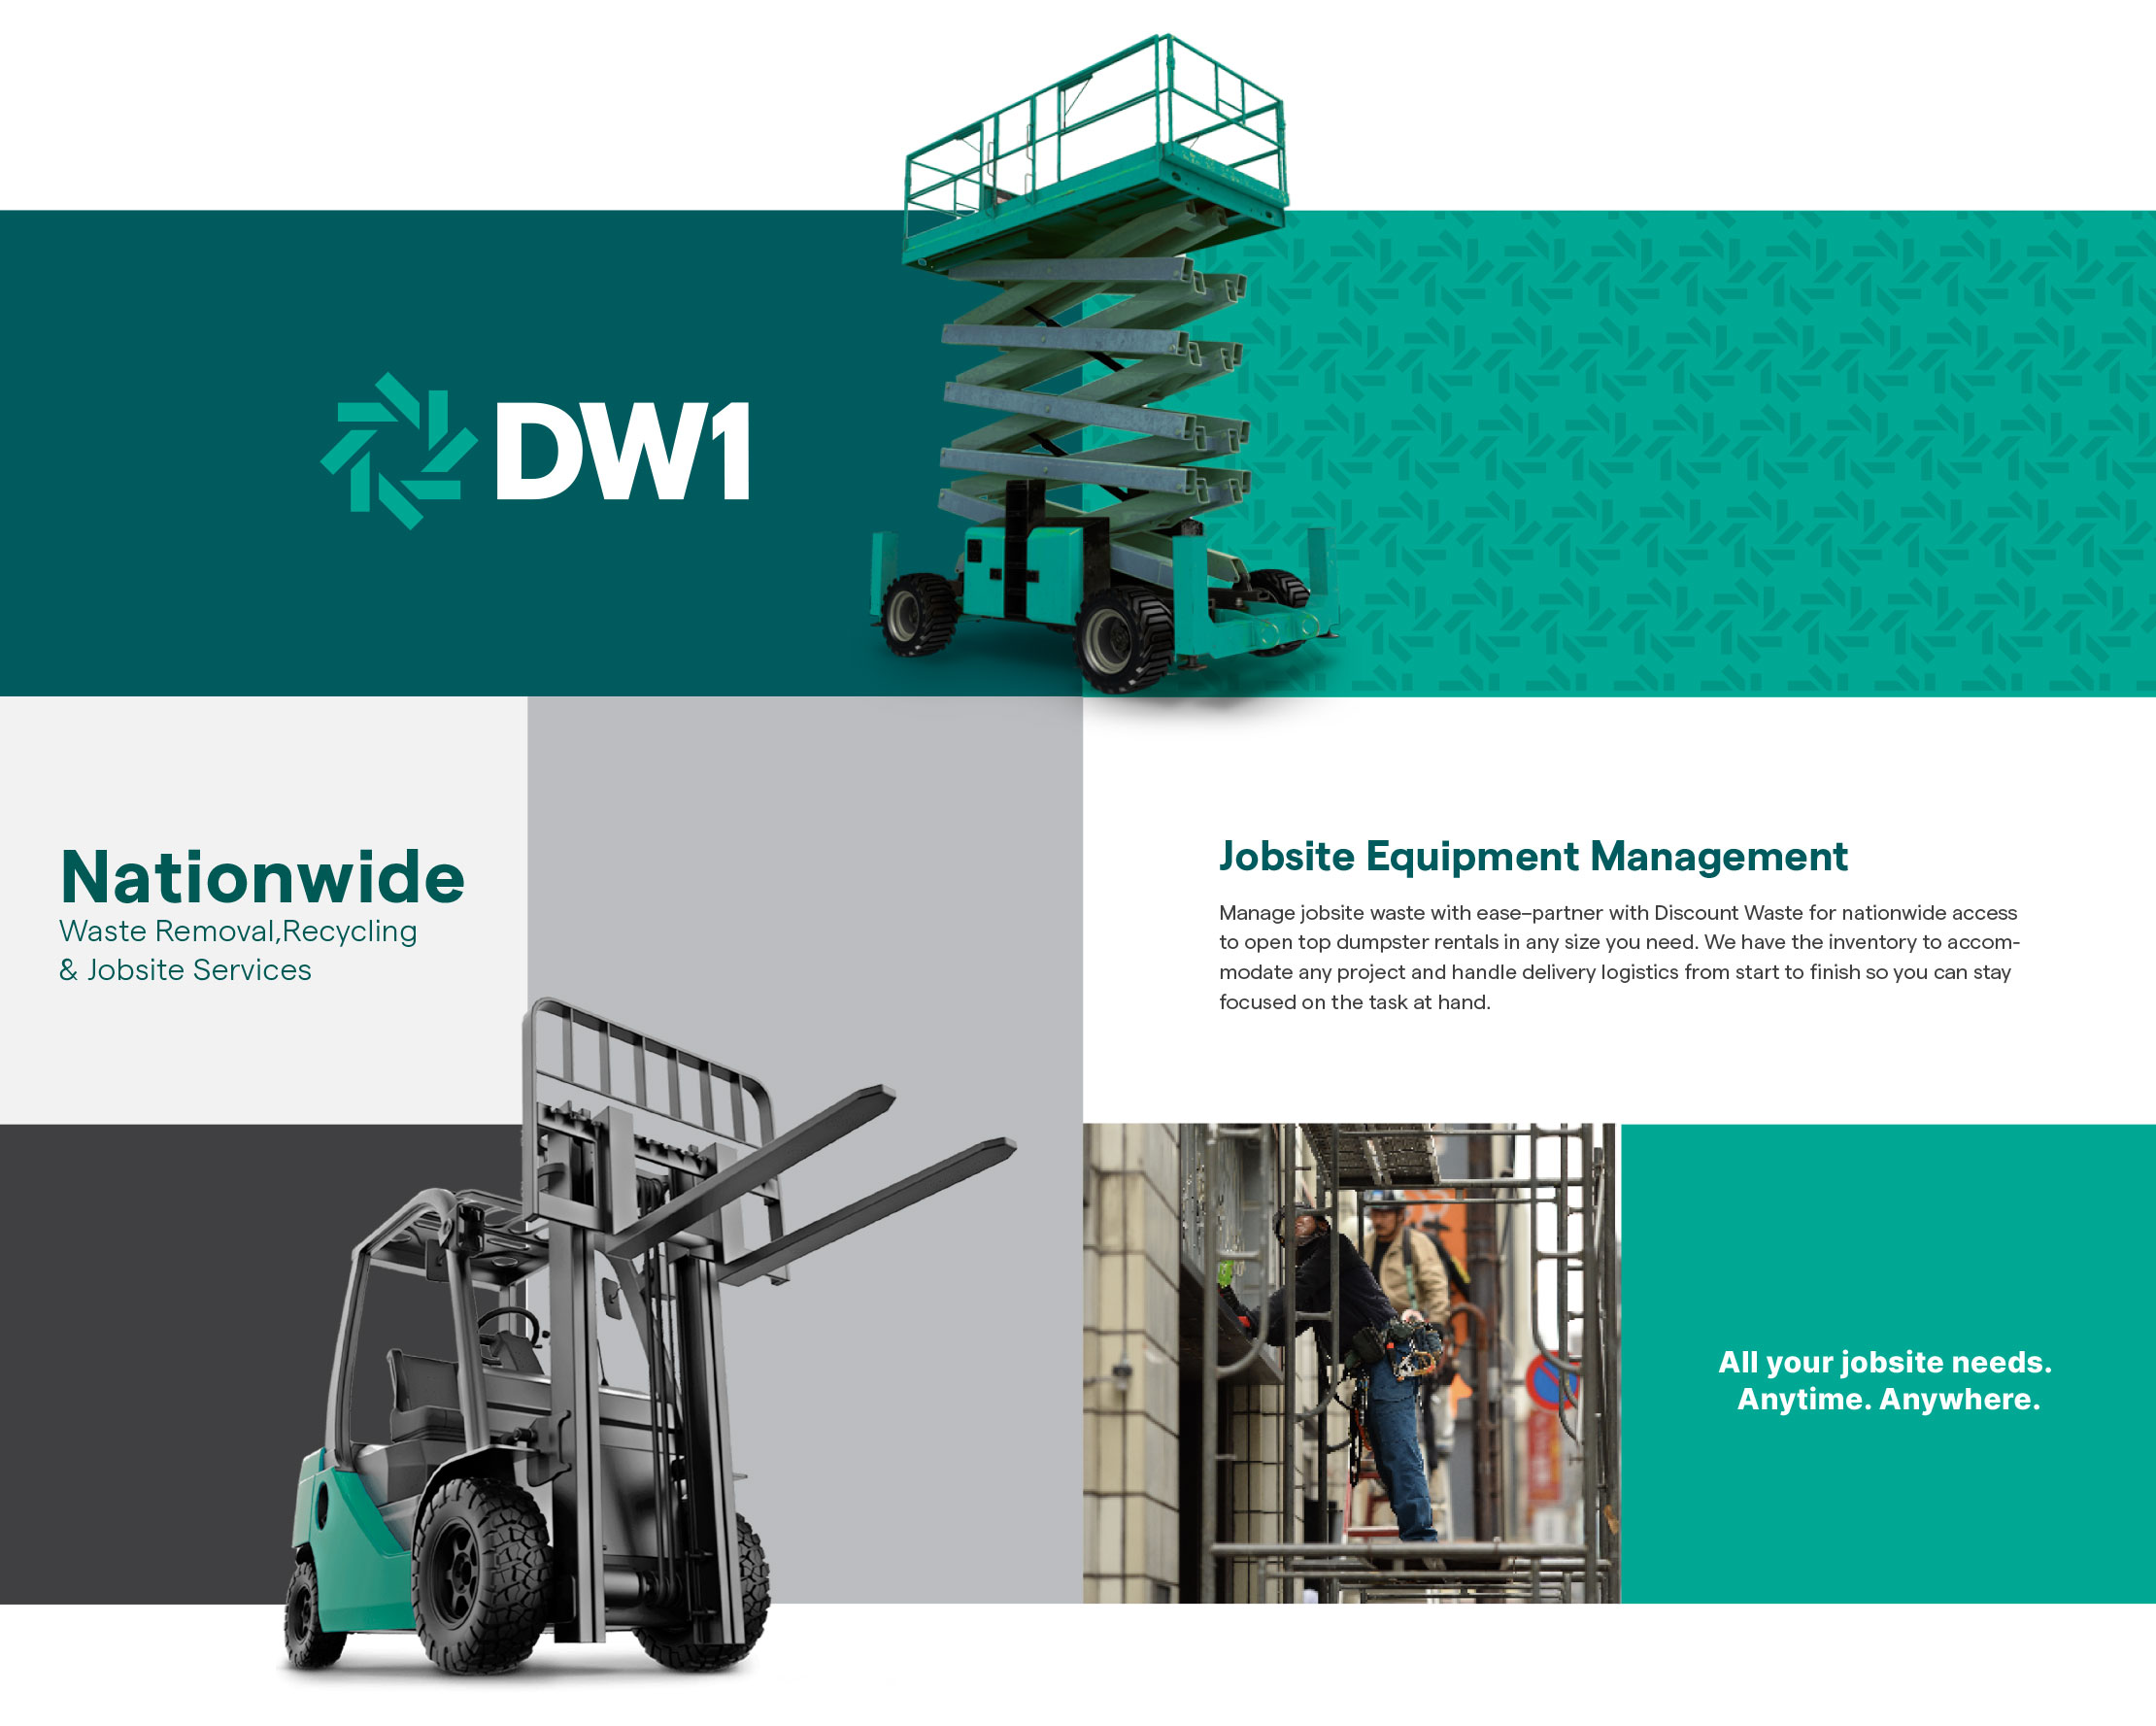 DW1-brand identity-11